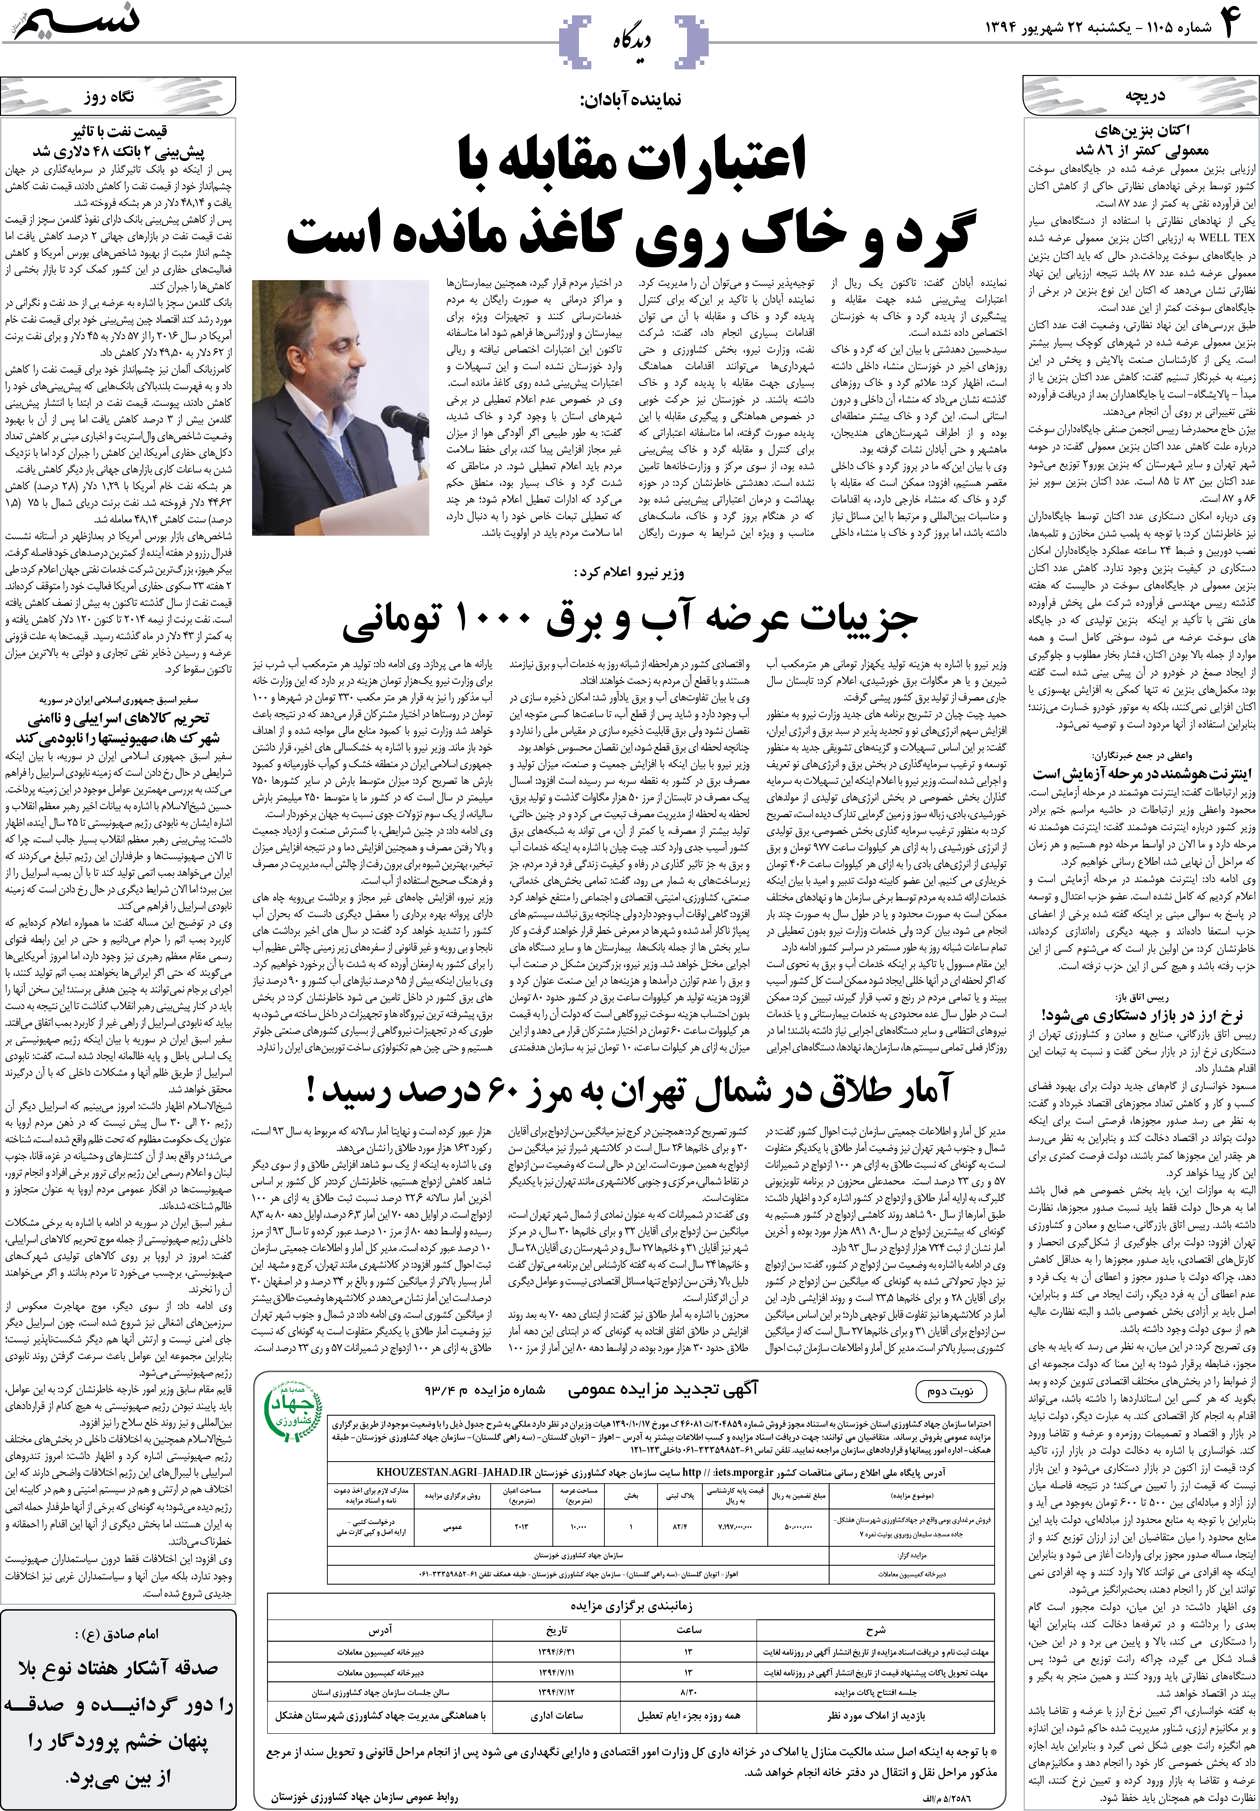 صفحه دیدگاه روزنامه نسیم شماره 1105